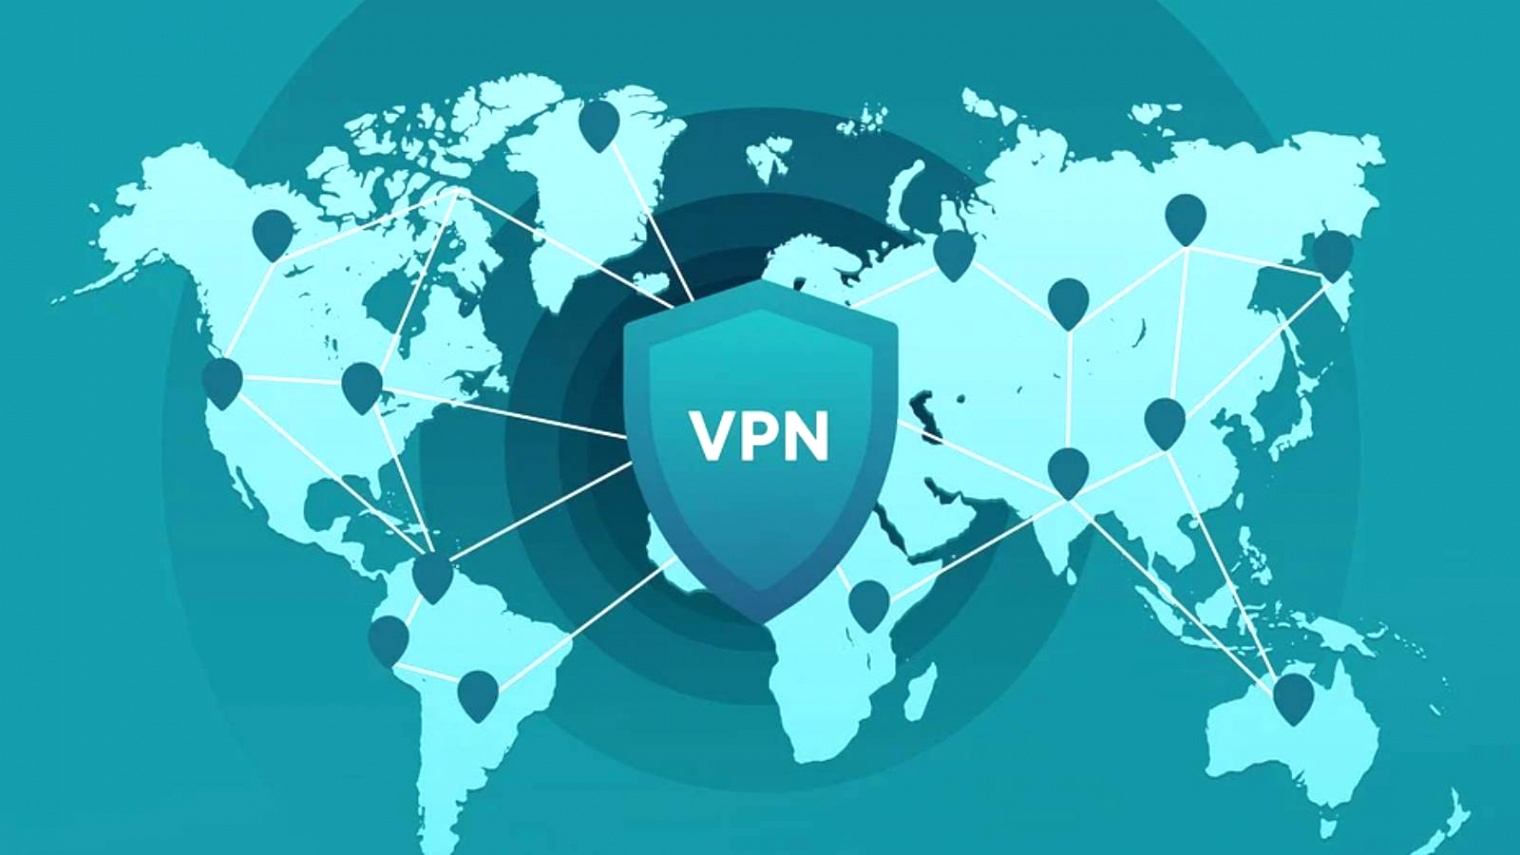 Vpn Services In Warren Nj Dans Global Vpn Downloads Surge to 277 Million In 2020, Arab Countries Lead